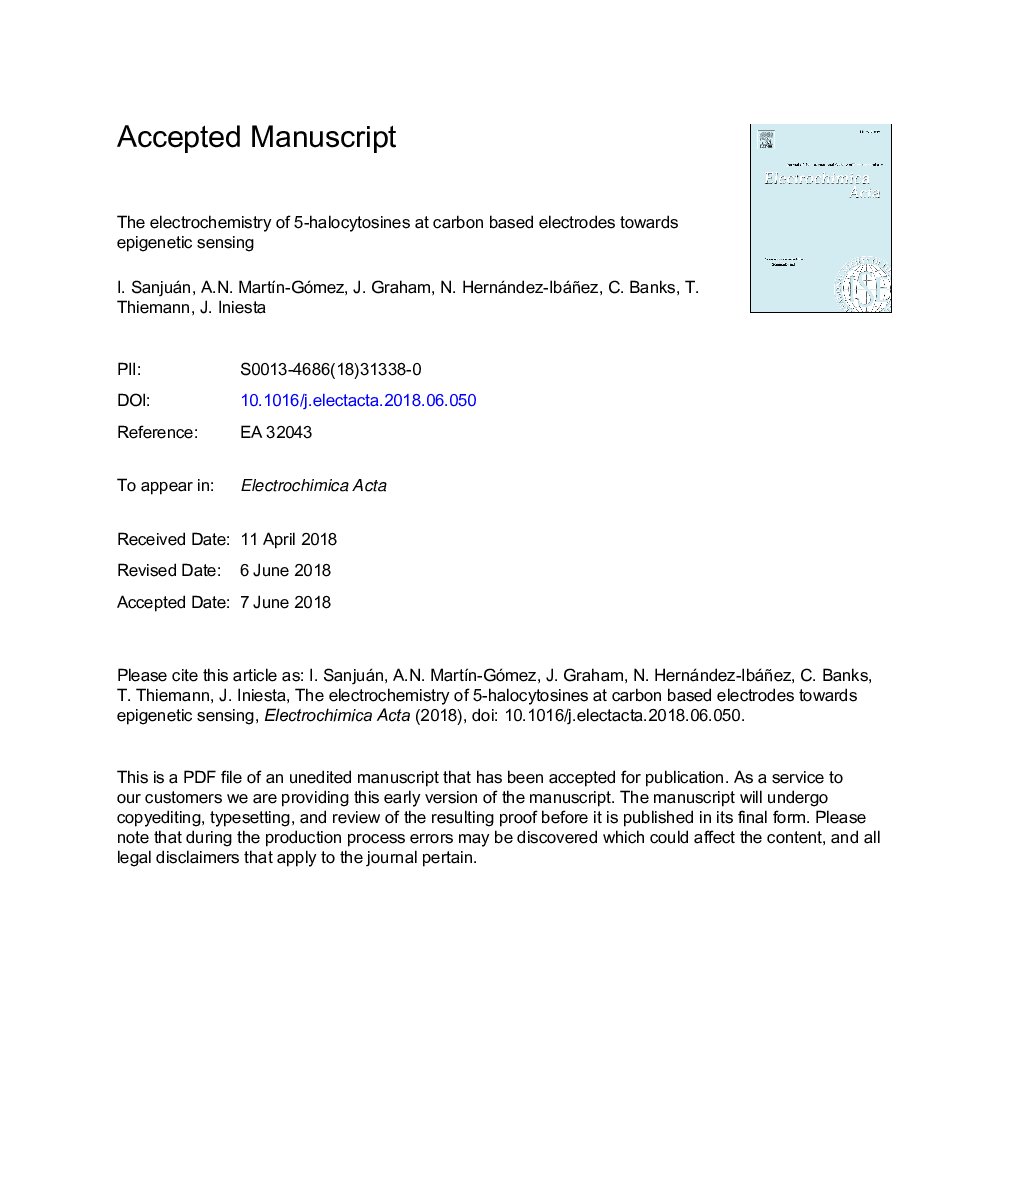 الکتروشیمی 5-هالوسیتوزین در الکترودهای مبتنی بر کربن نسبت به سنجش اپیژنتیک 